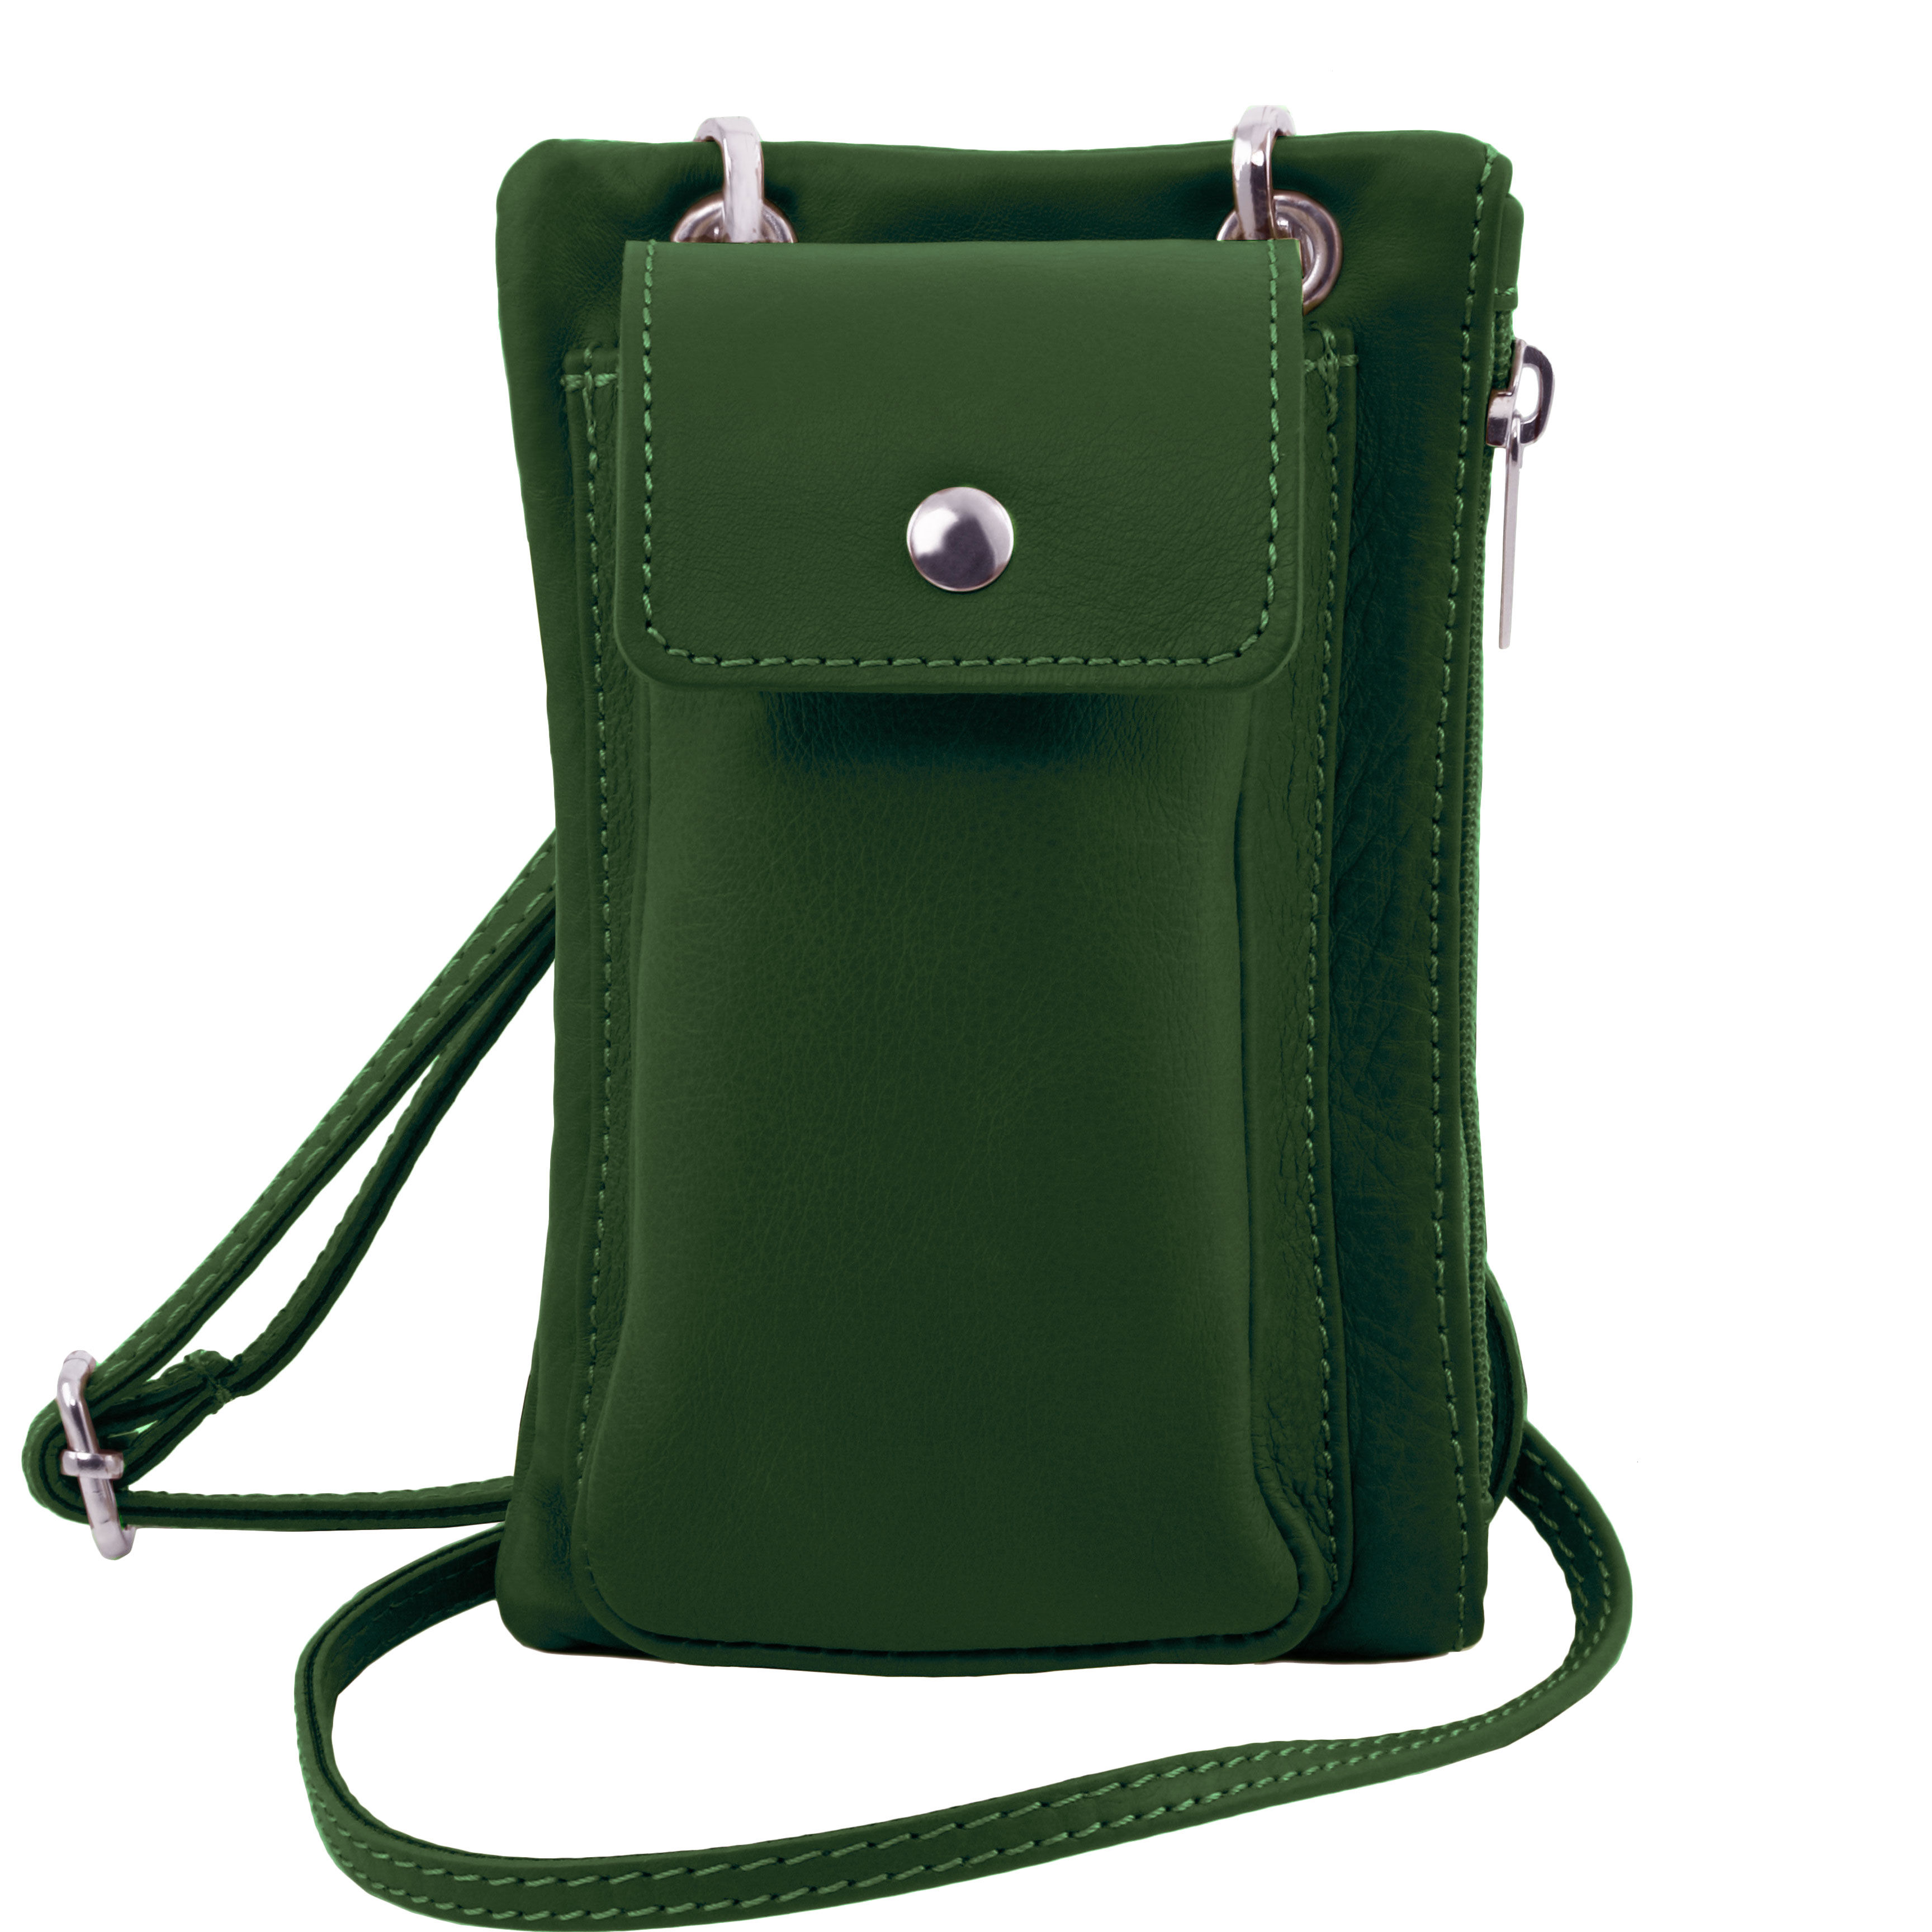 TL Bag Soft Leather cellphone holder mini cross bag Dark Green